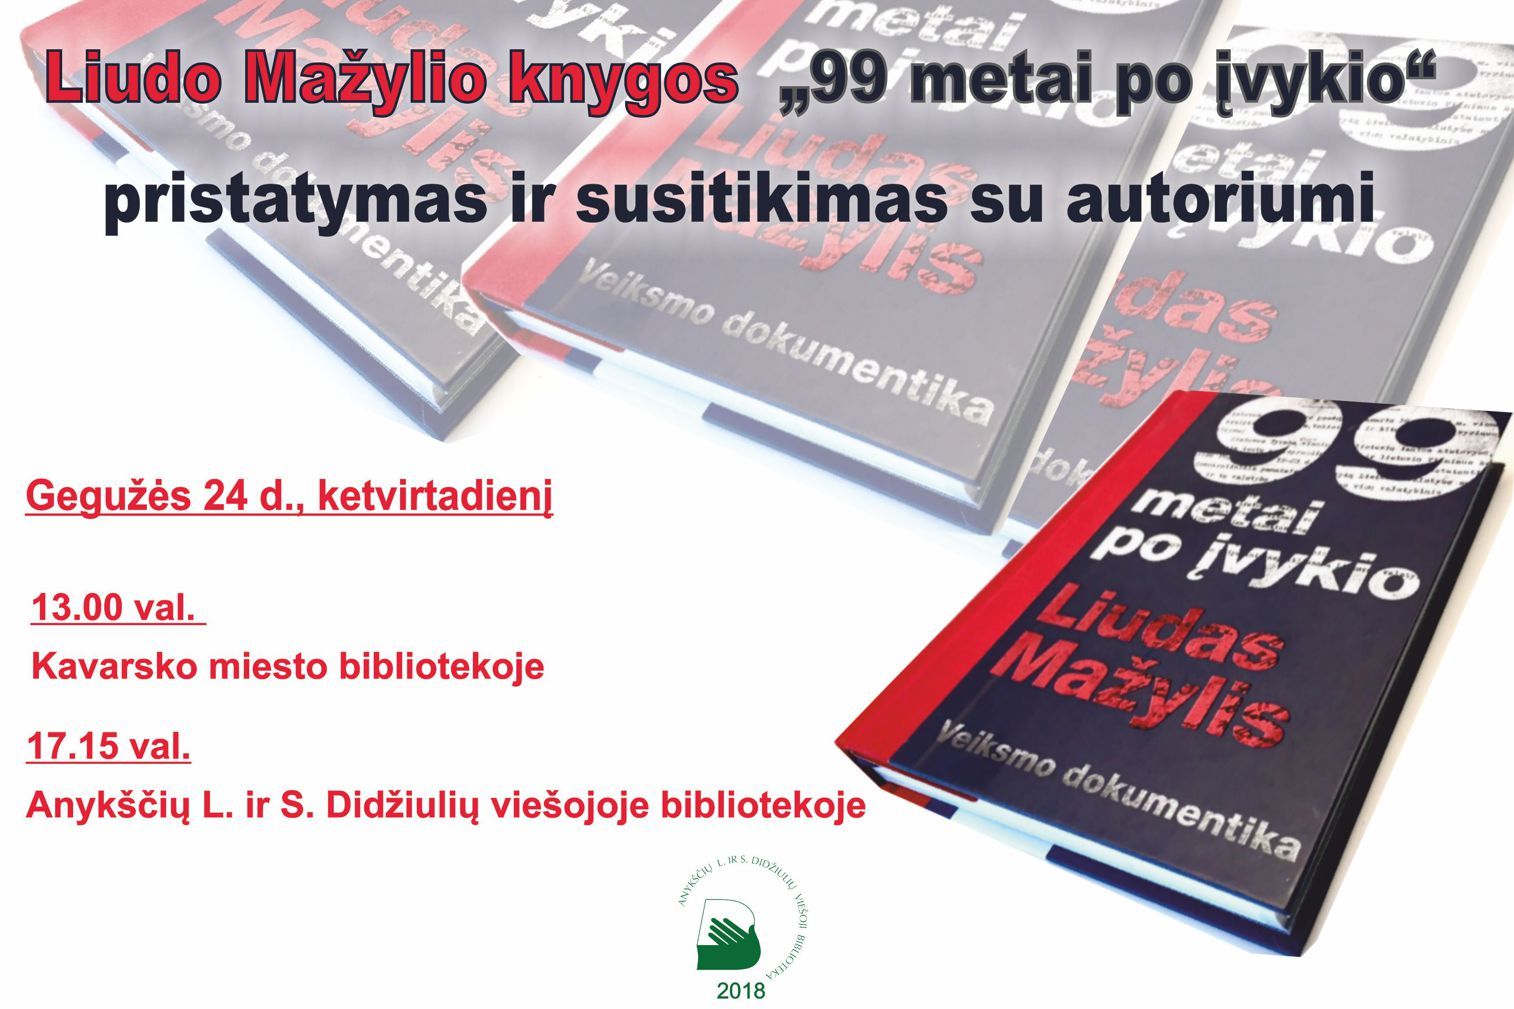 Liudo Mažylio knygos „99 metai po įvykio" pristatymas Kavarsko miesto bibliotekoje ir susitikimas su autoriumi